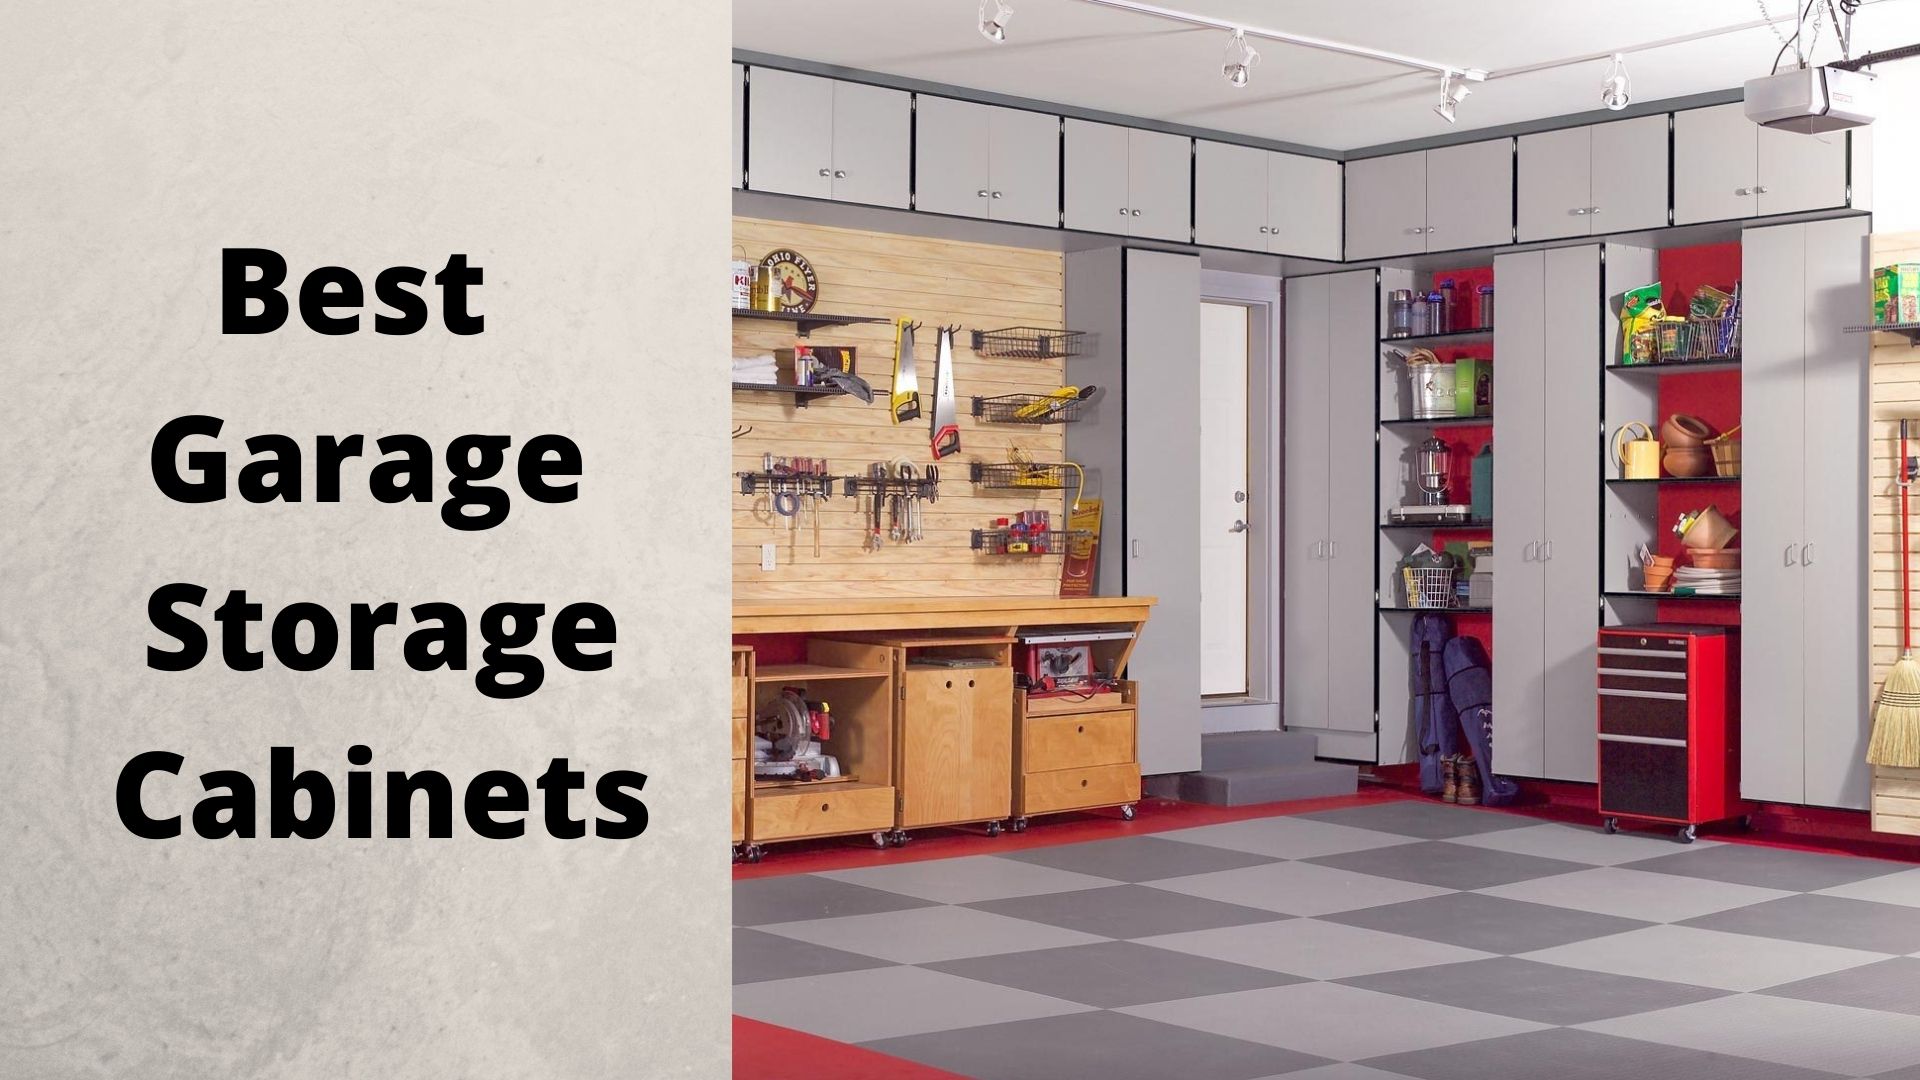 8 Best Garage Storage Cabinets – Reviews 2021